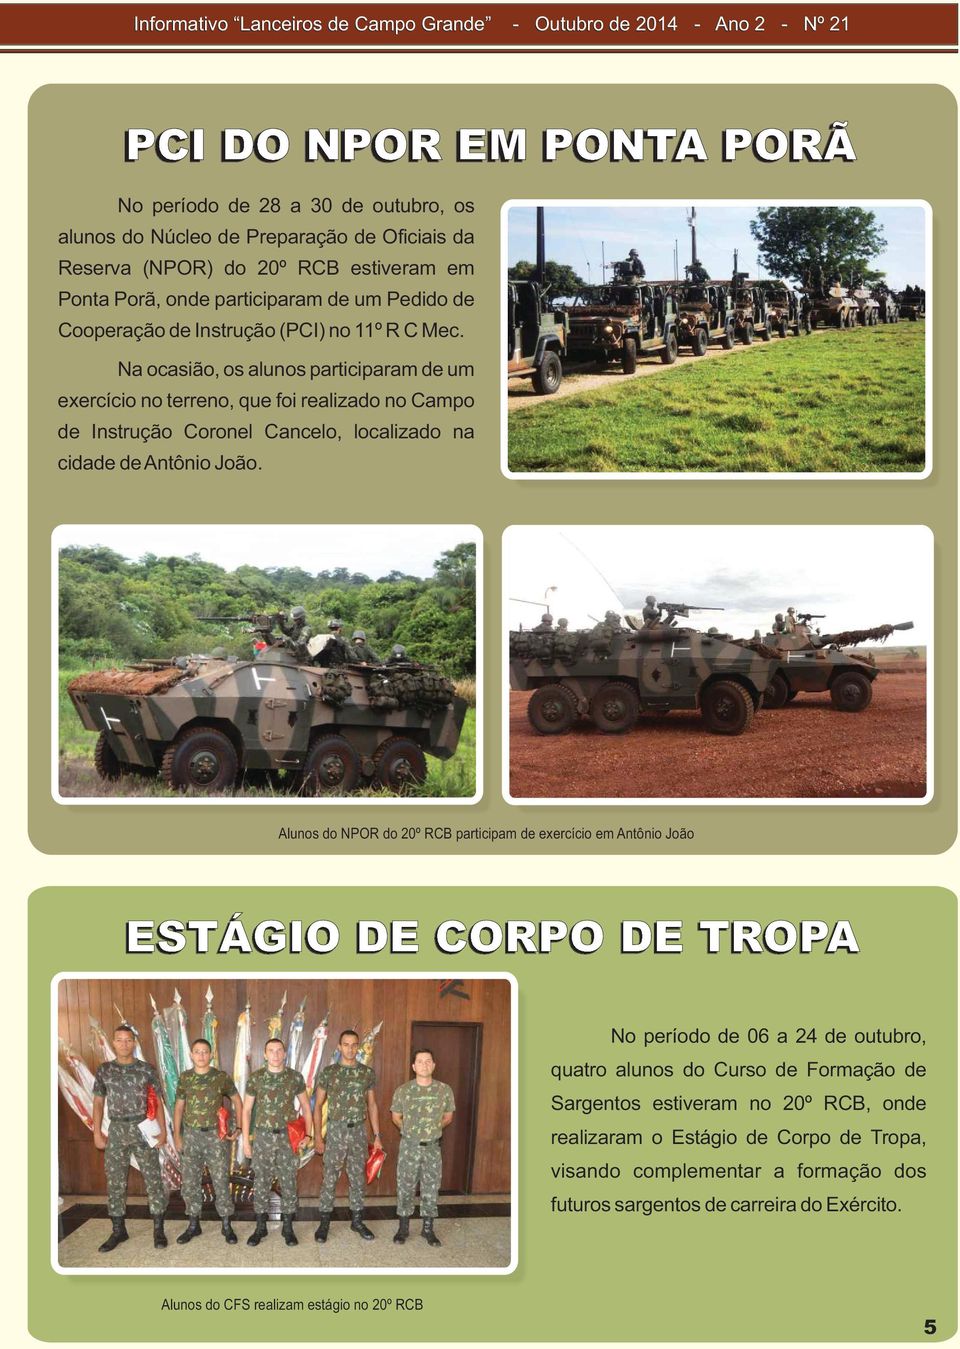 Na ocasião, os alunos participaram de um exercício no terreno, que foi realizado no Campo de Instrução Coronel Cancelo, localizado na cidade de Antônio João.